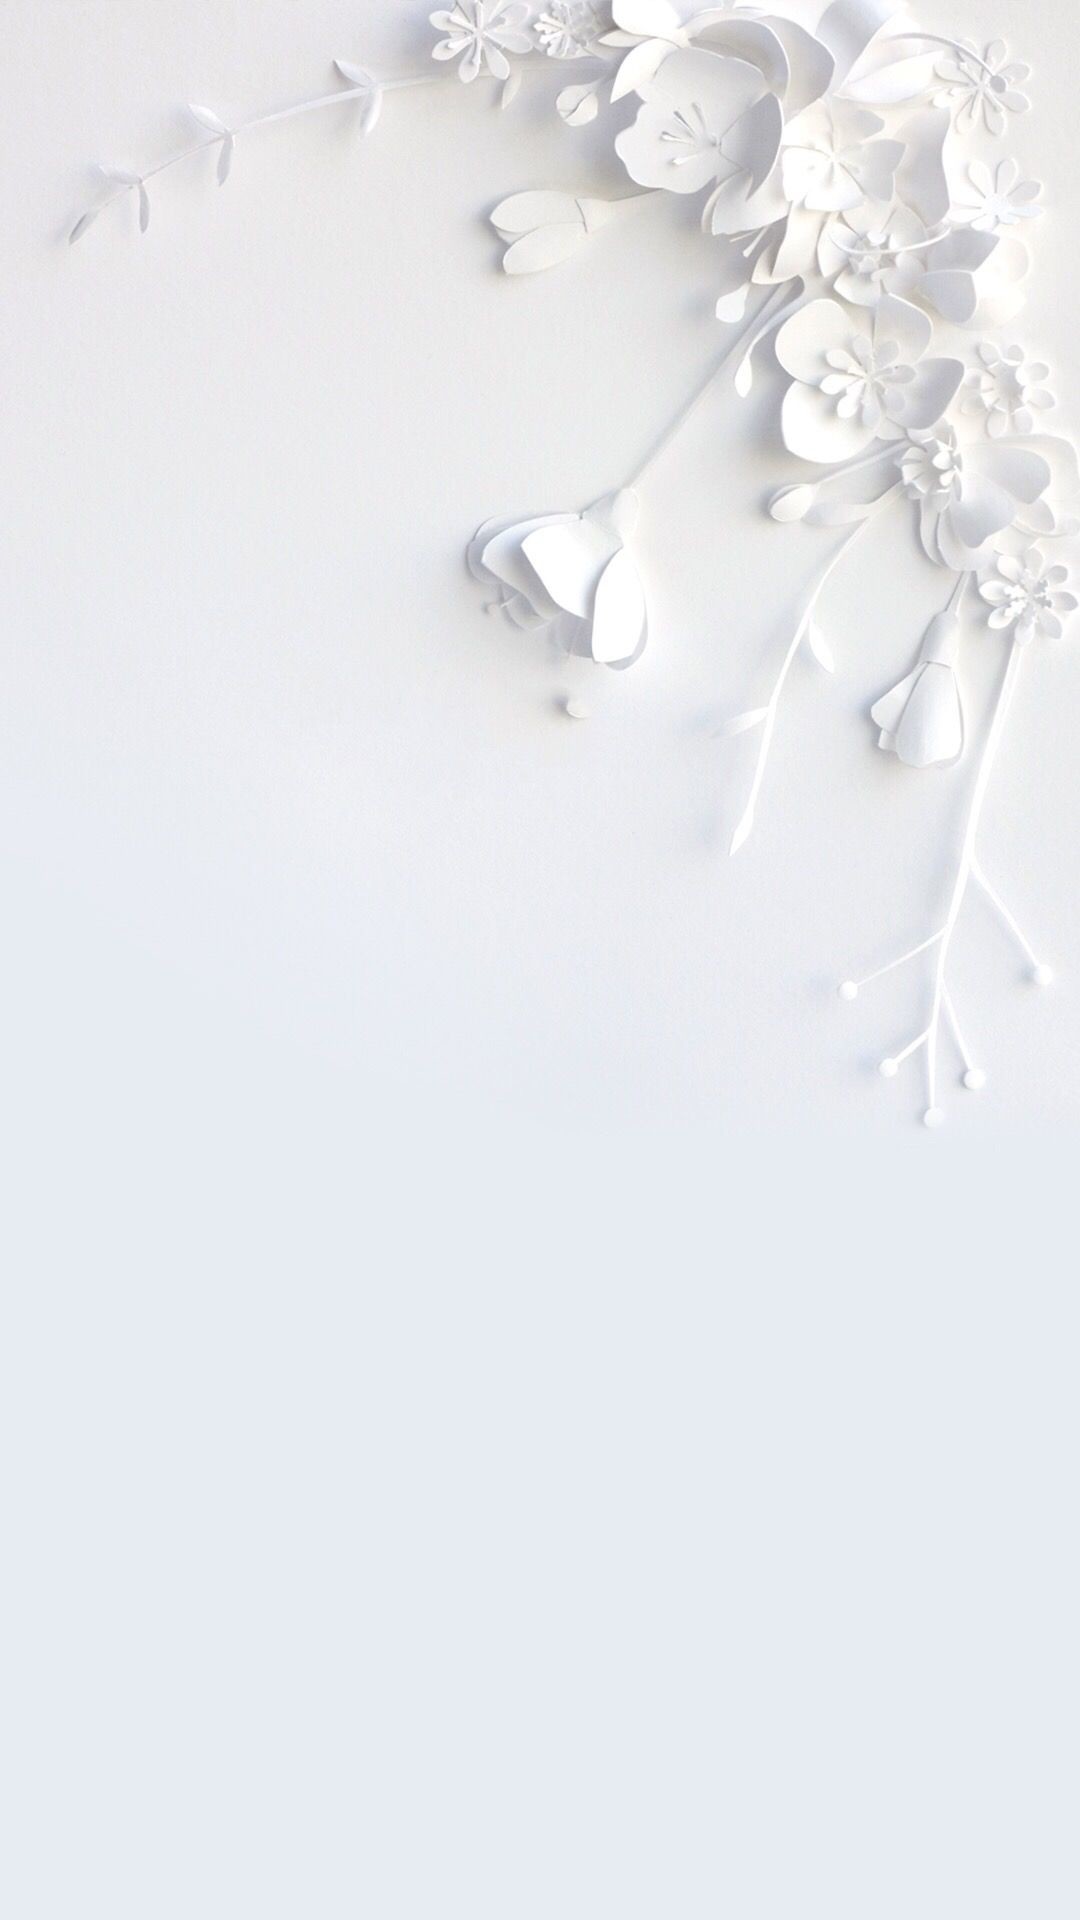 Tổng hợp hình nền trắng trên iPhone cực đẹp